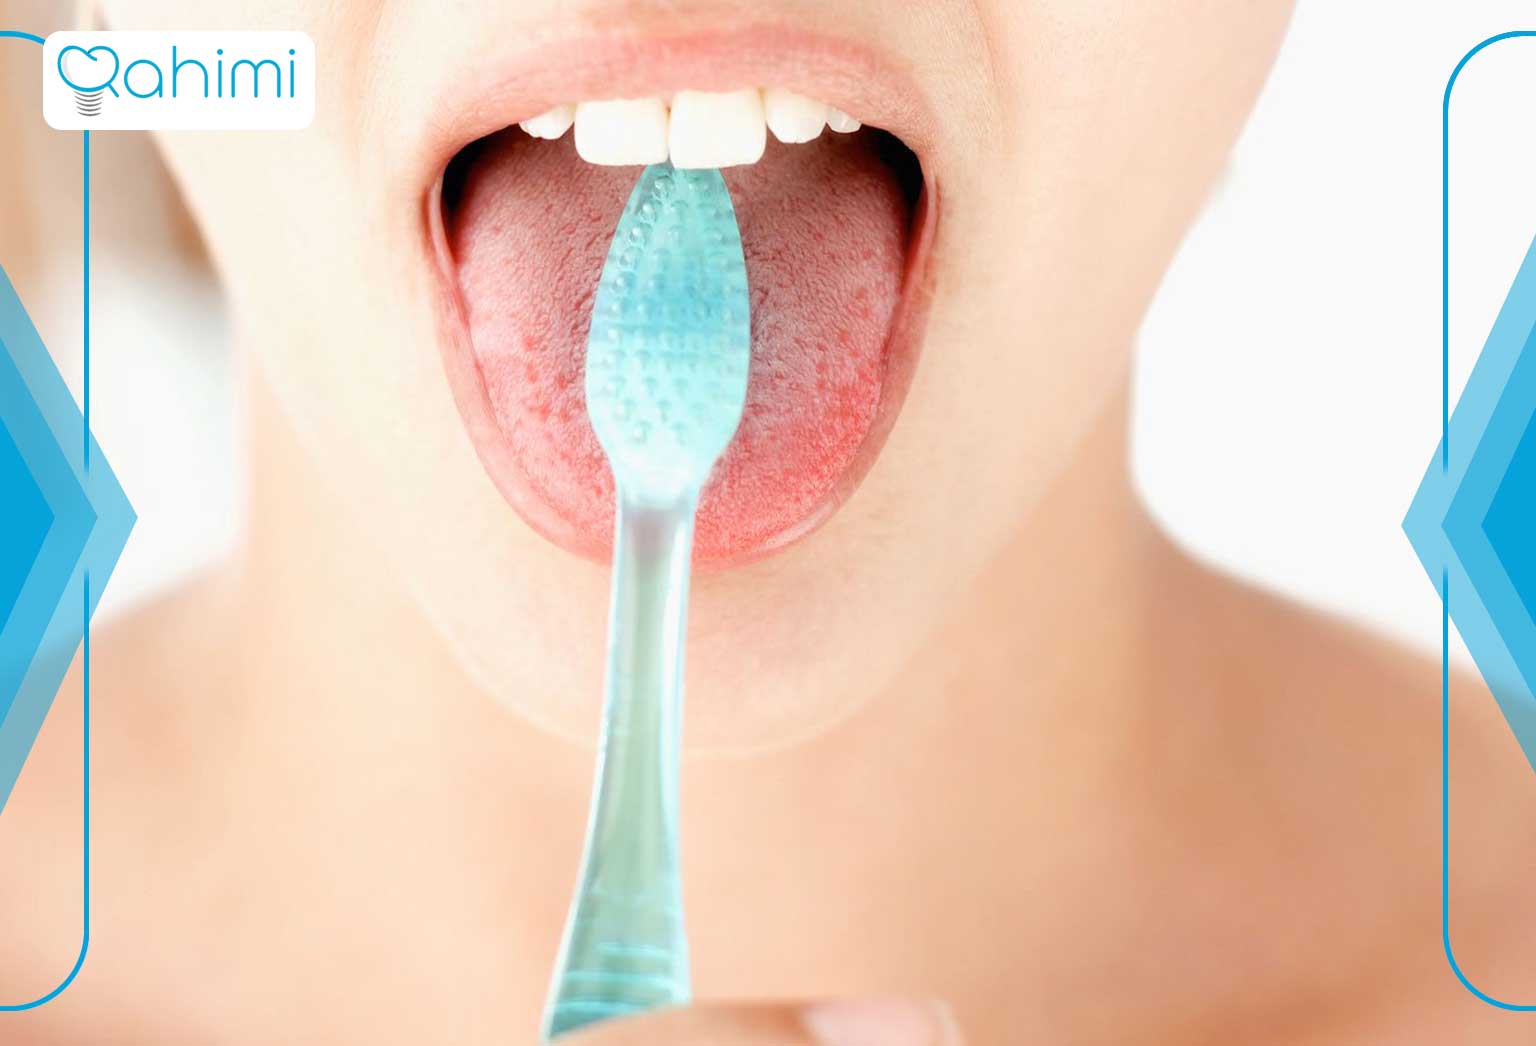 زمانی که سرطان علت سبزشدن زبان باشد، درمان به مرحله، نوع و محل دقیق سرطان بستگی دارد. درمان ممکن است شامل موارد زیر باشد: